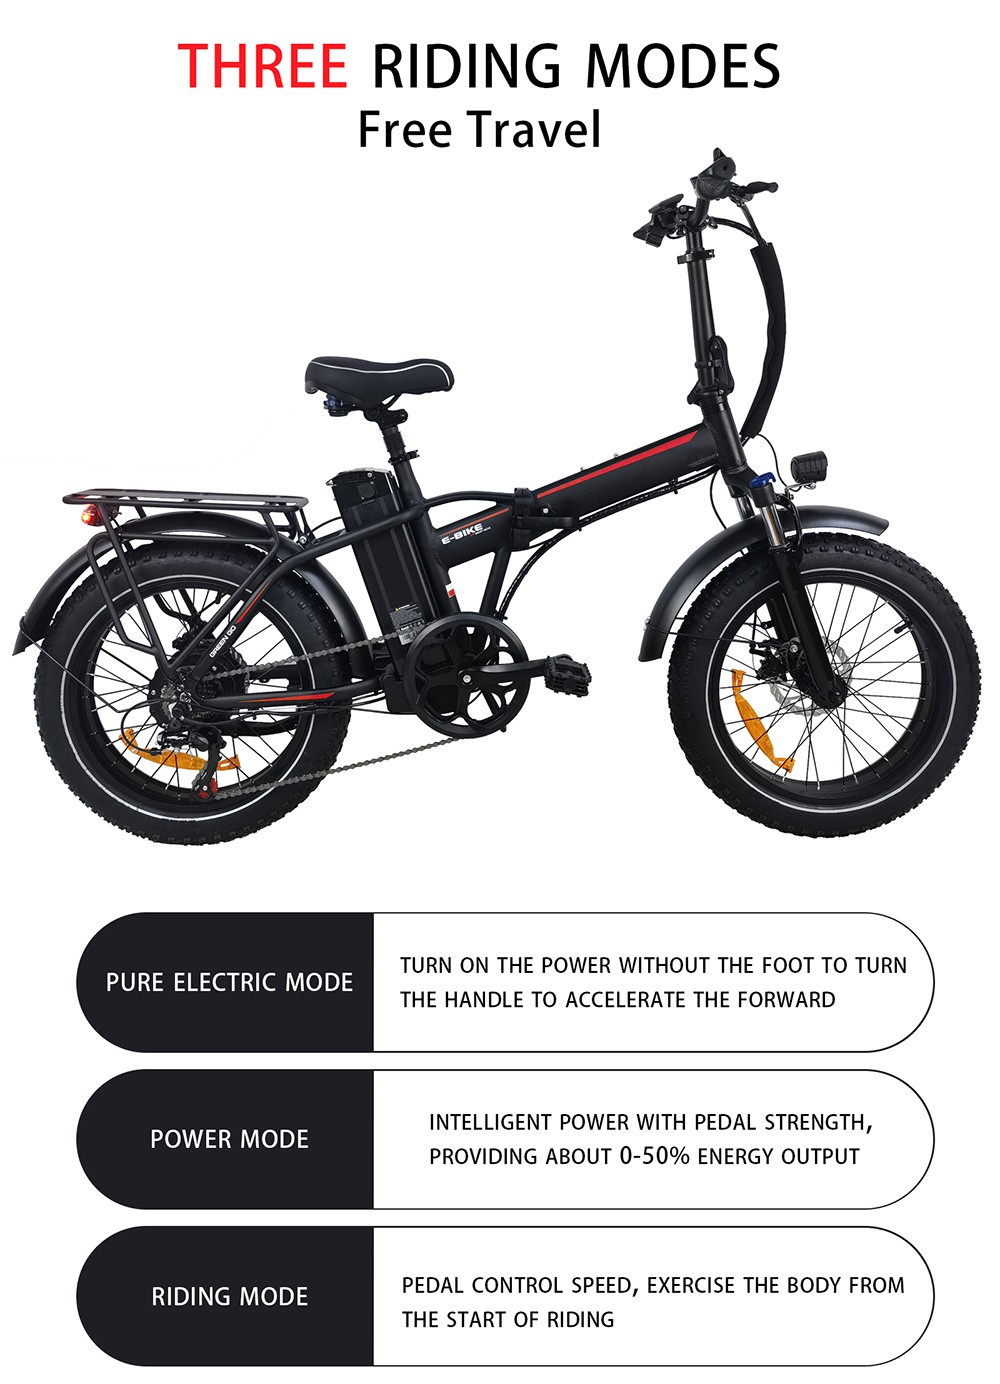 BAOLUJIE DZ2031 elektrische fiets, 500 W motor 48 V 13 Ah batterij 20 * 4.0 inch band 35-45 km bereik 40 km / u maximale snelheid SHIMANO mechanische schijfrem met 7 versnellingen - groen